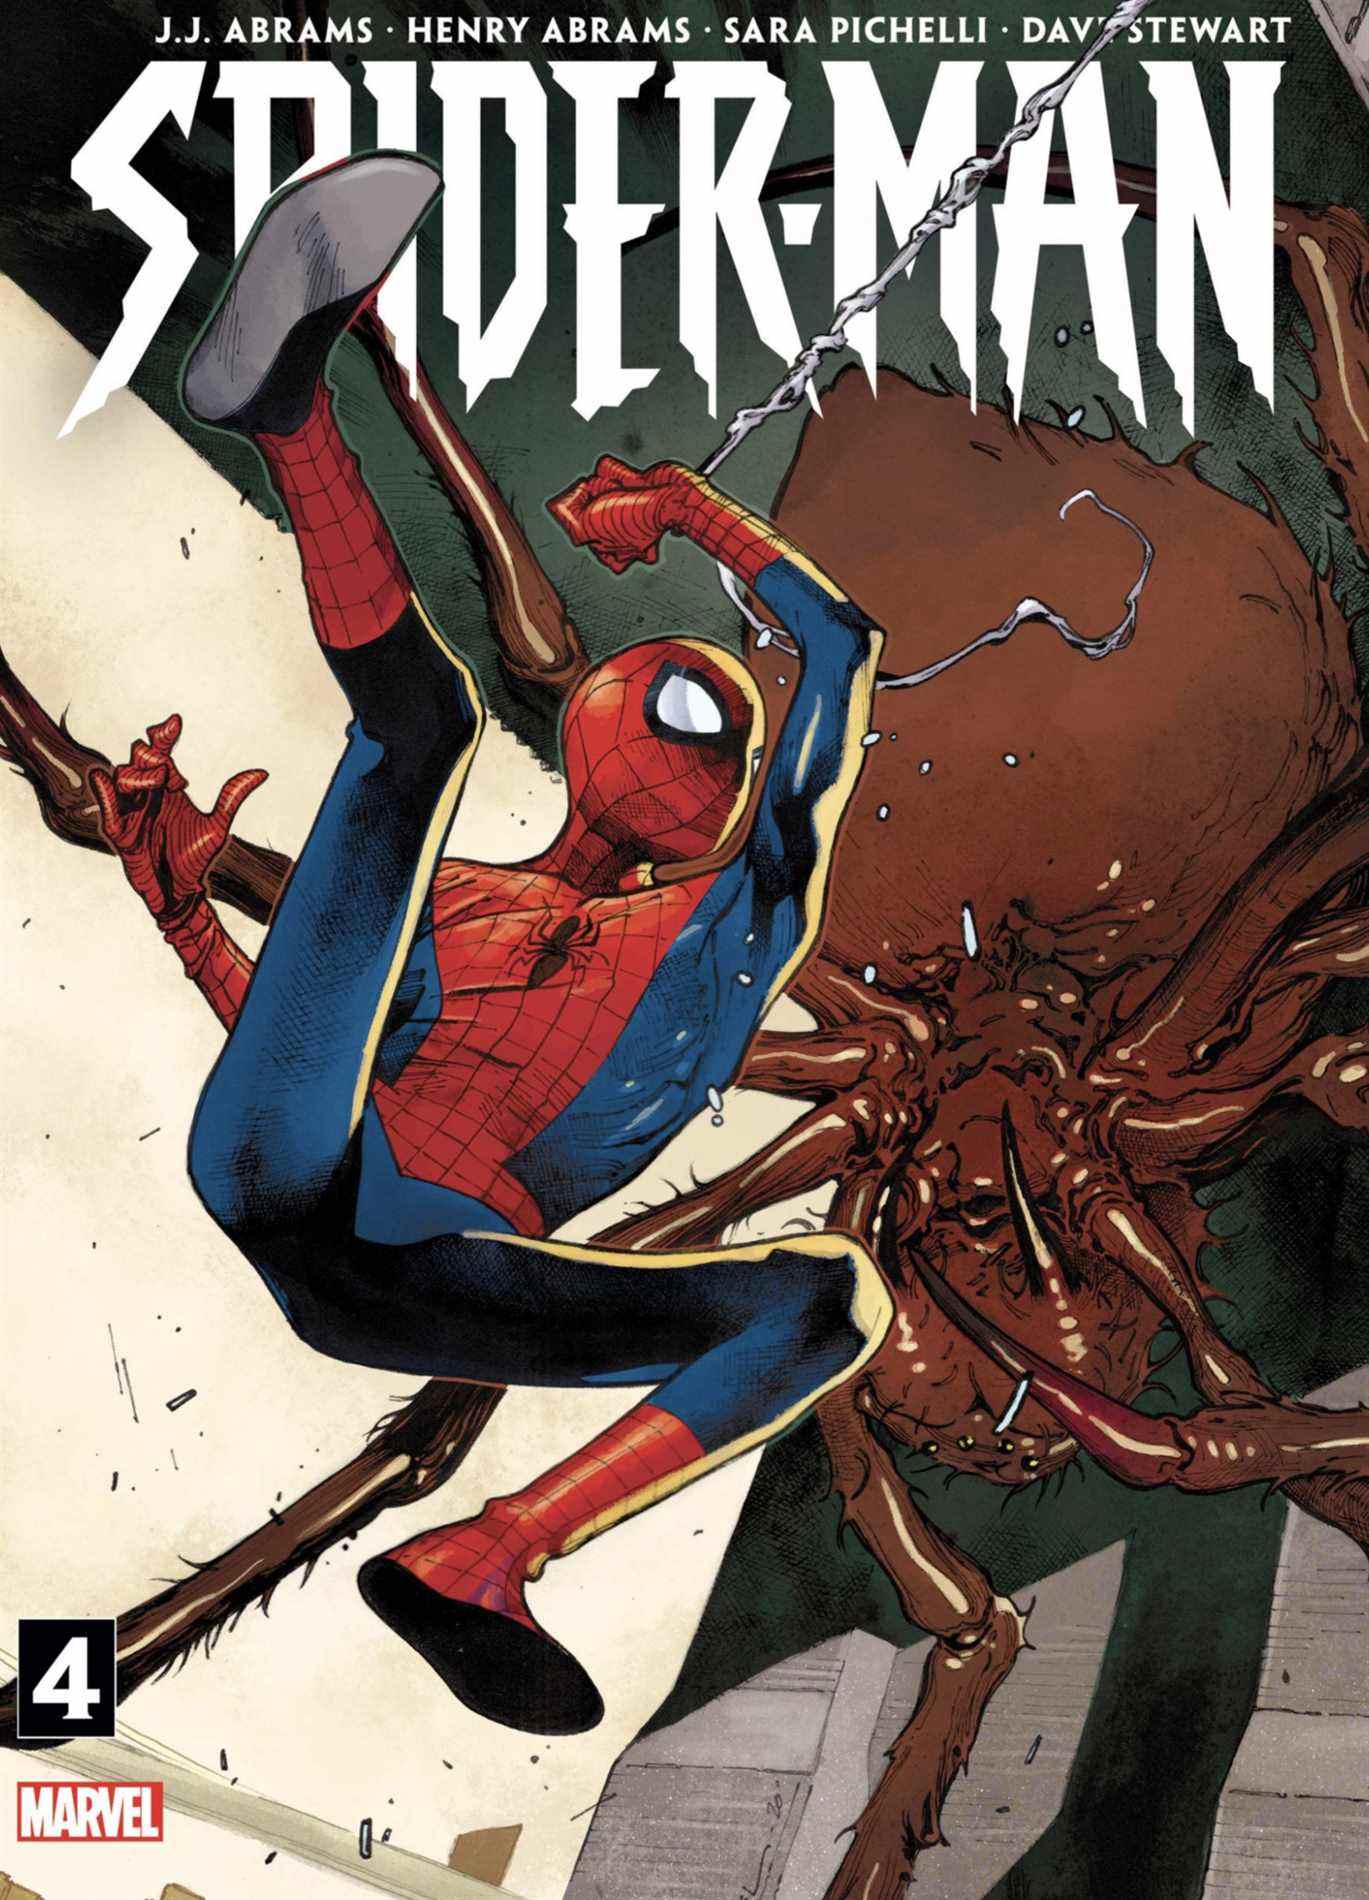 Couverture de Spider-Man : Bloodline #4